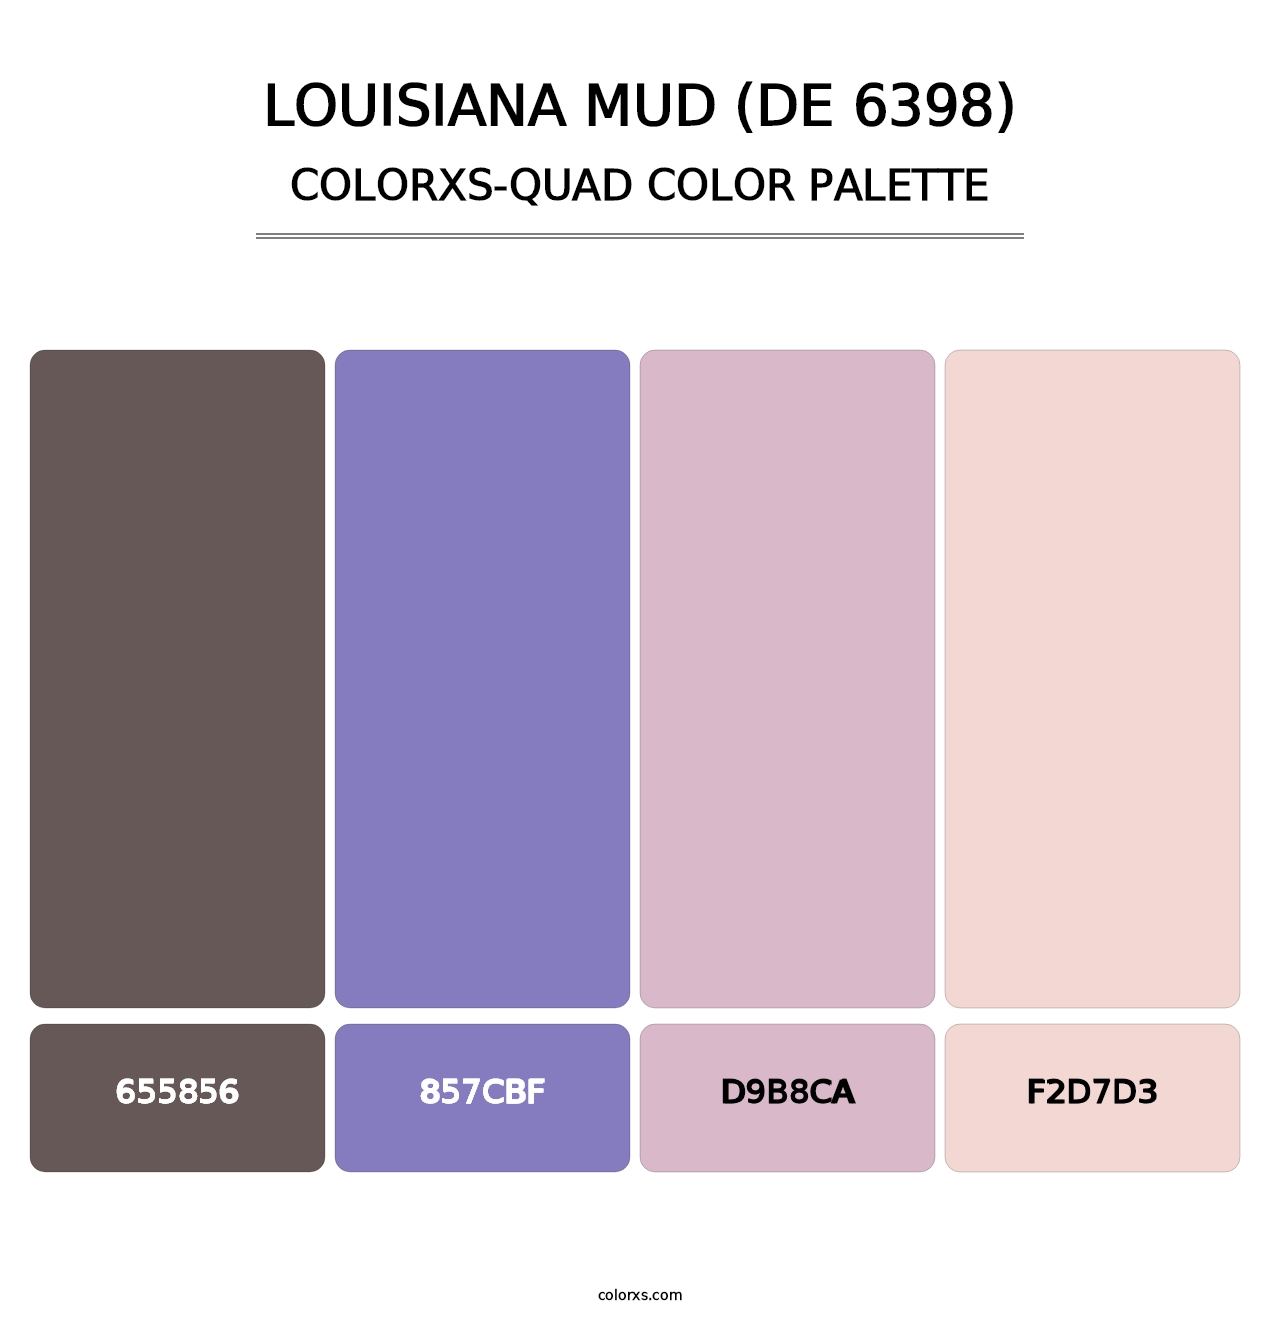 Louisiana Mud (DE 6398) - Colorxs Quad Palette